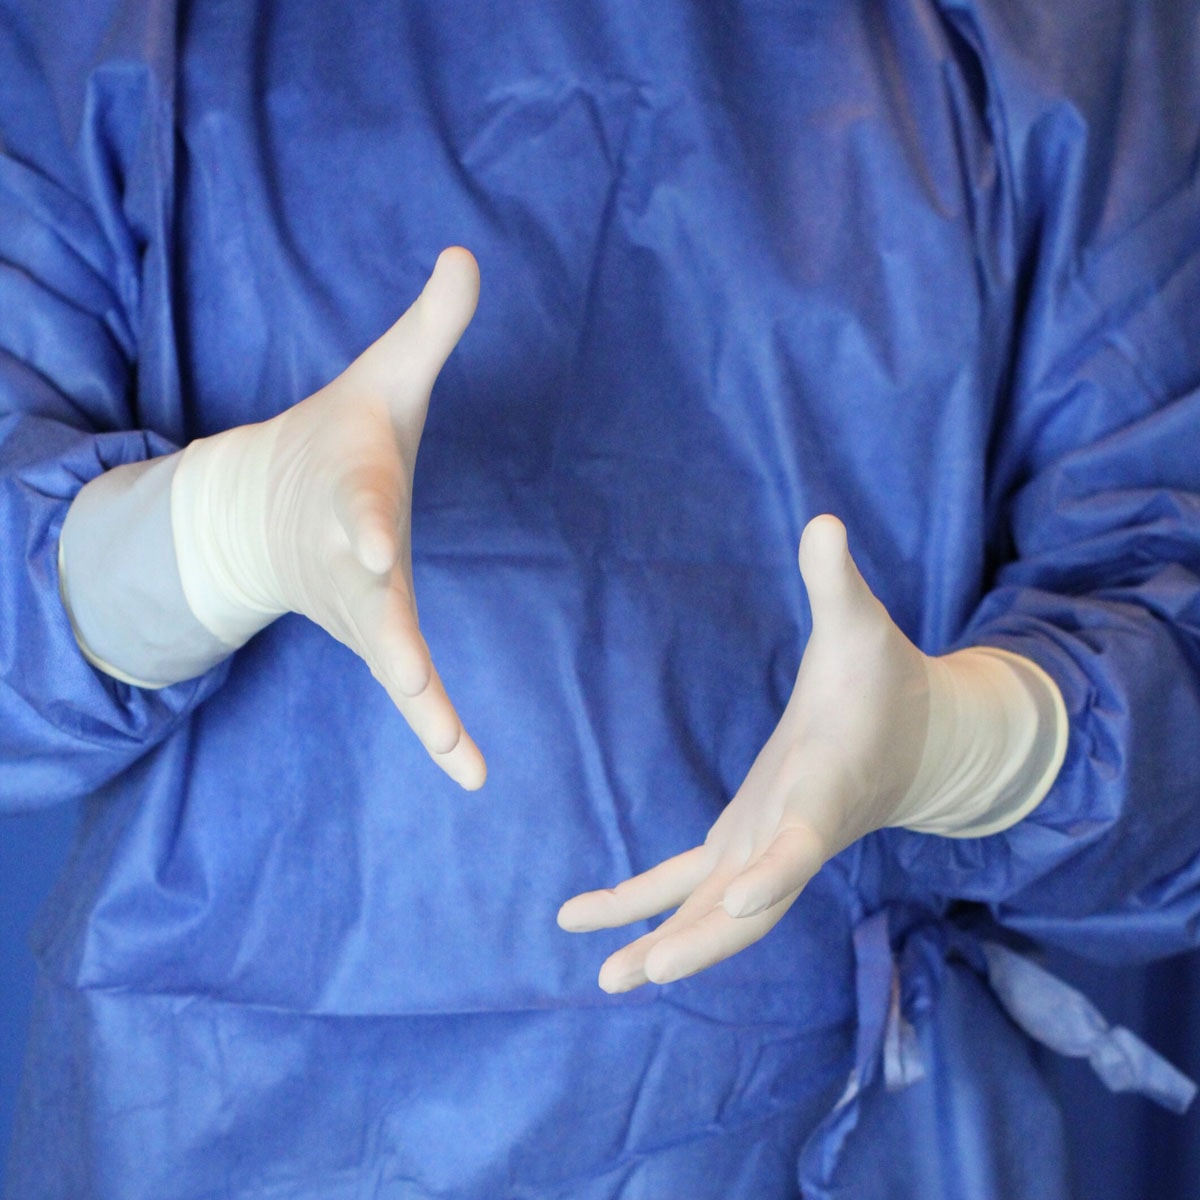 deep plane face lift expert plastic surgeon dr michael byun